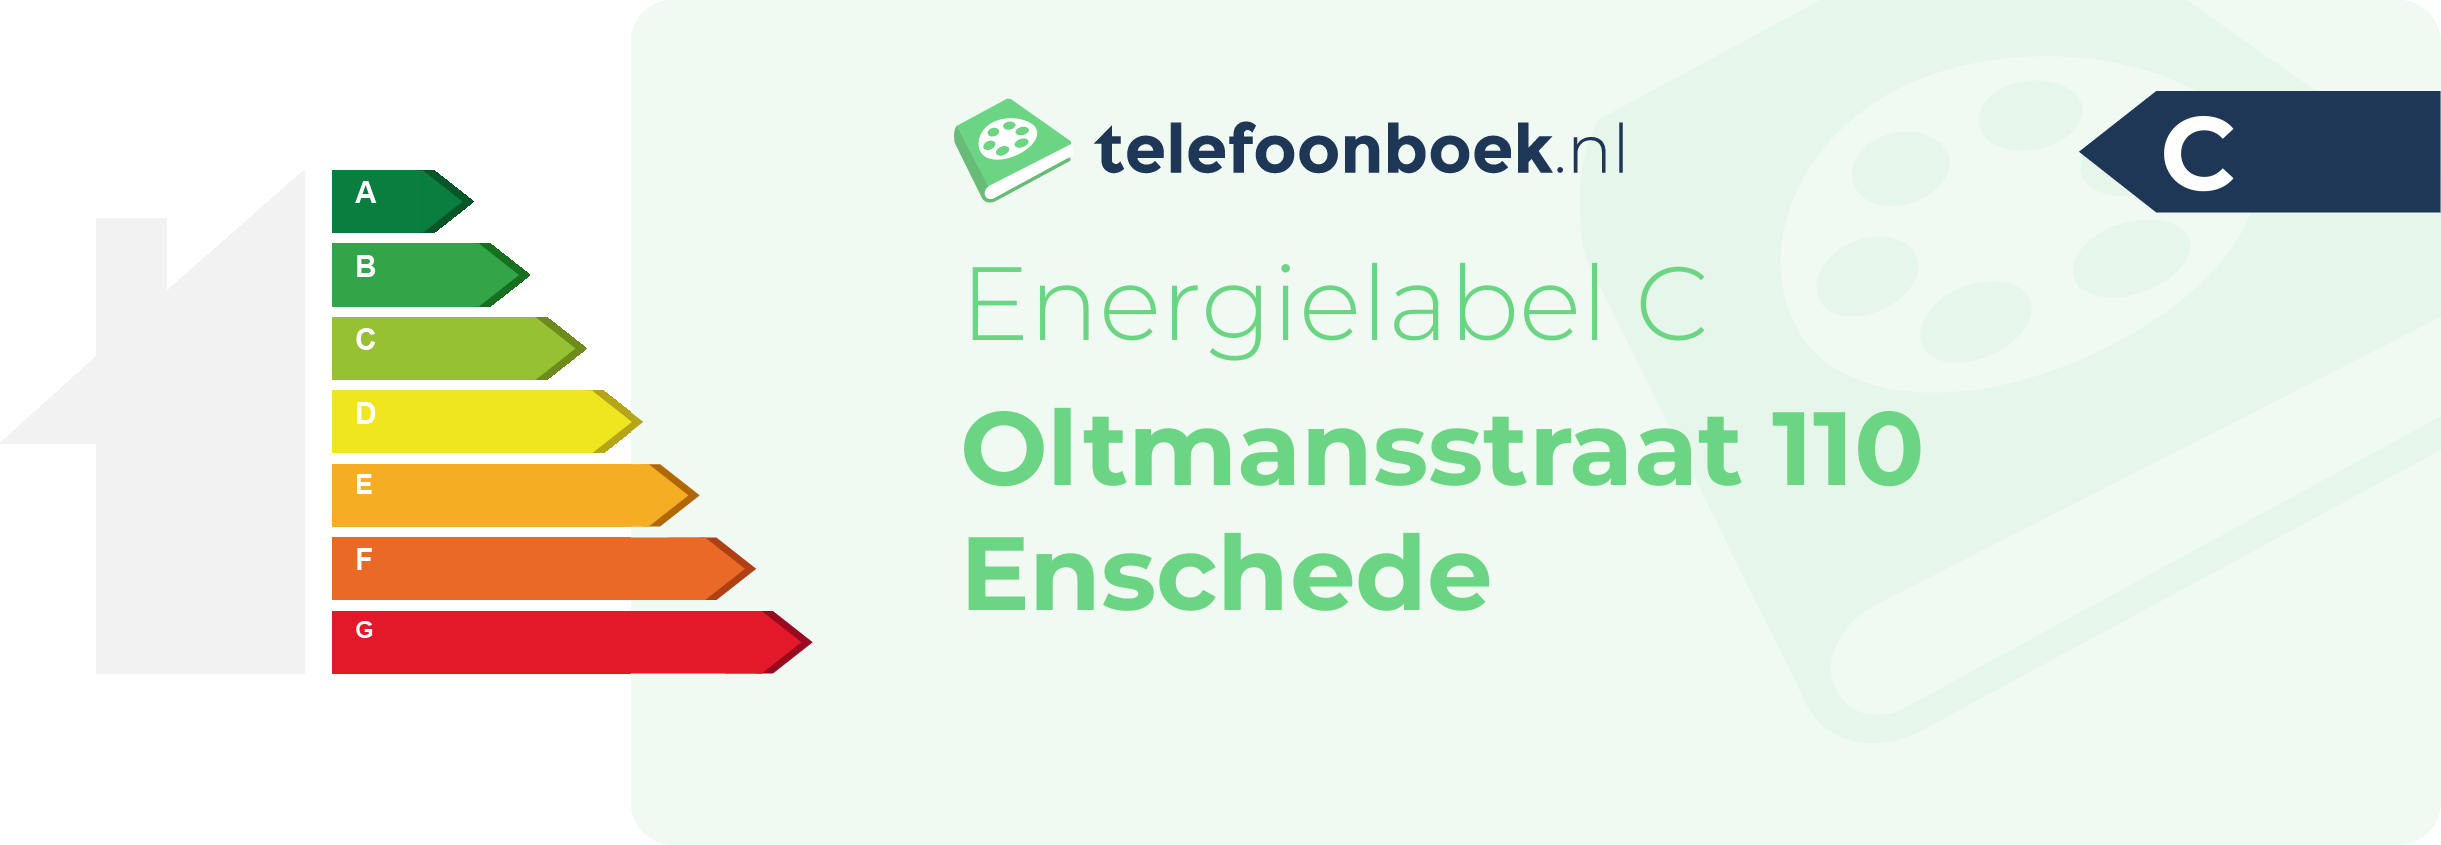 Energielabel Oltmansstraat 110 Enschede